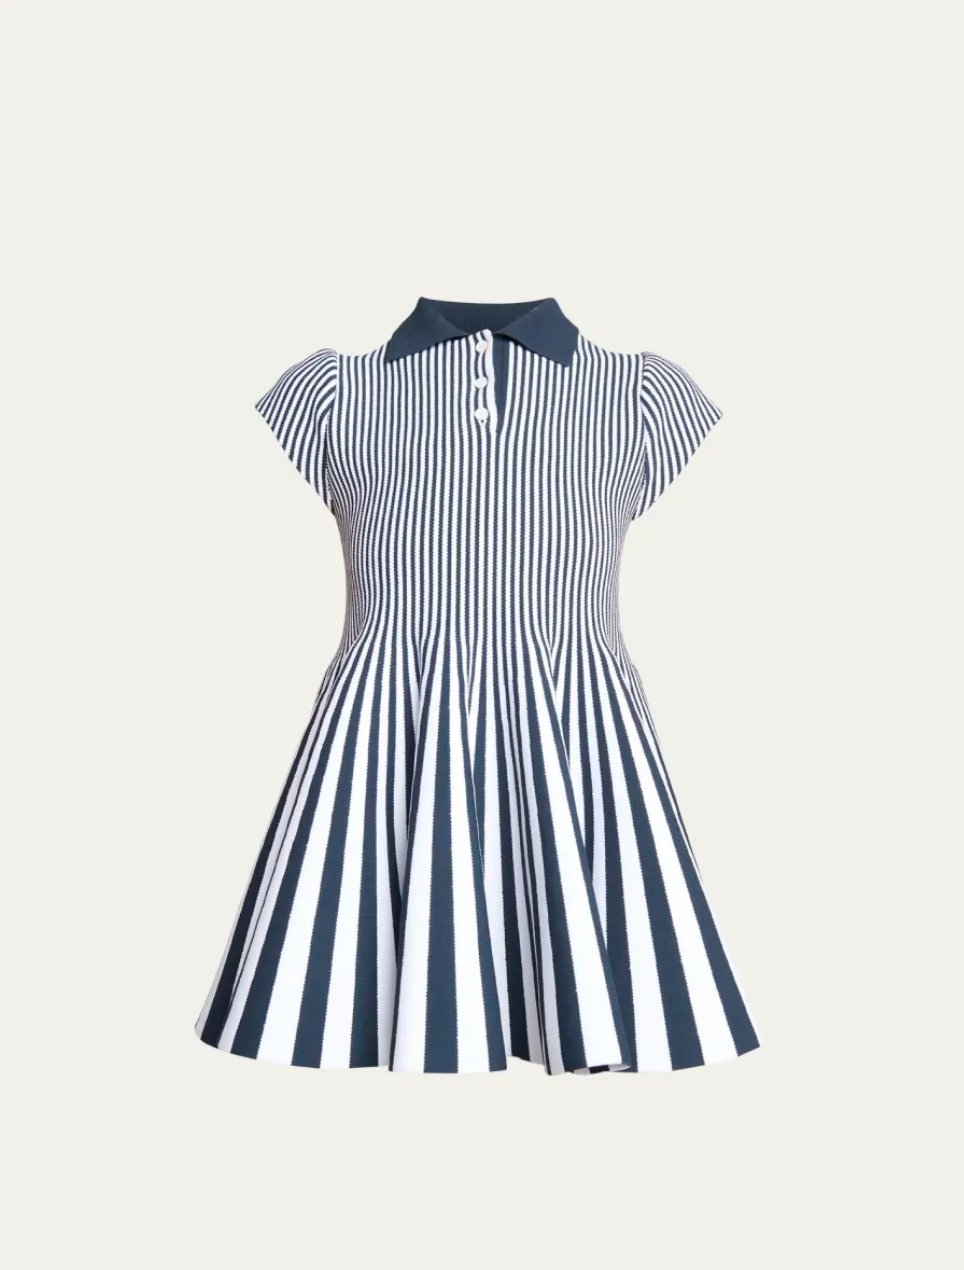 Gabby Prescod's Striped Pleated Polo Dress